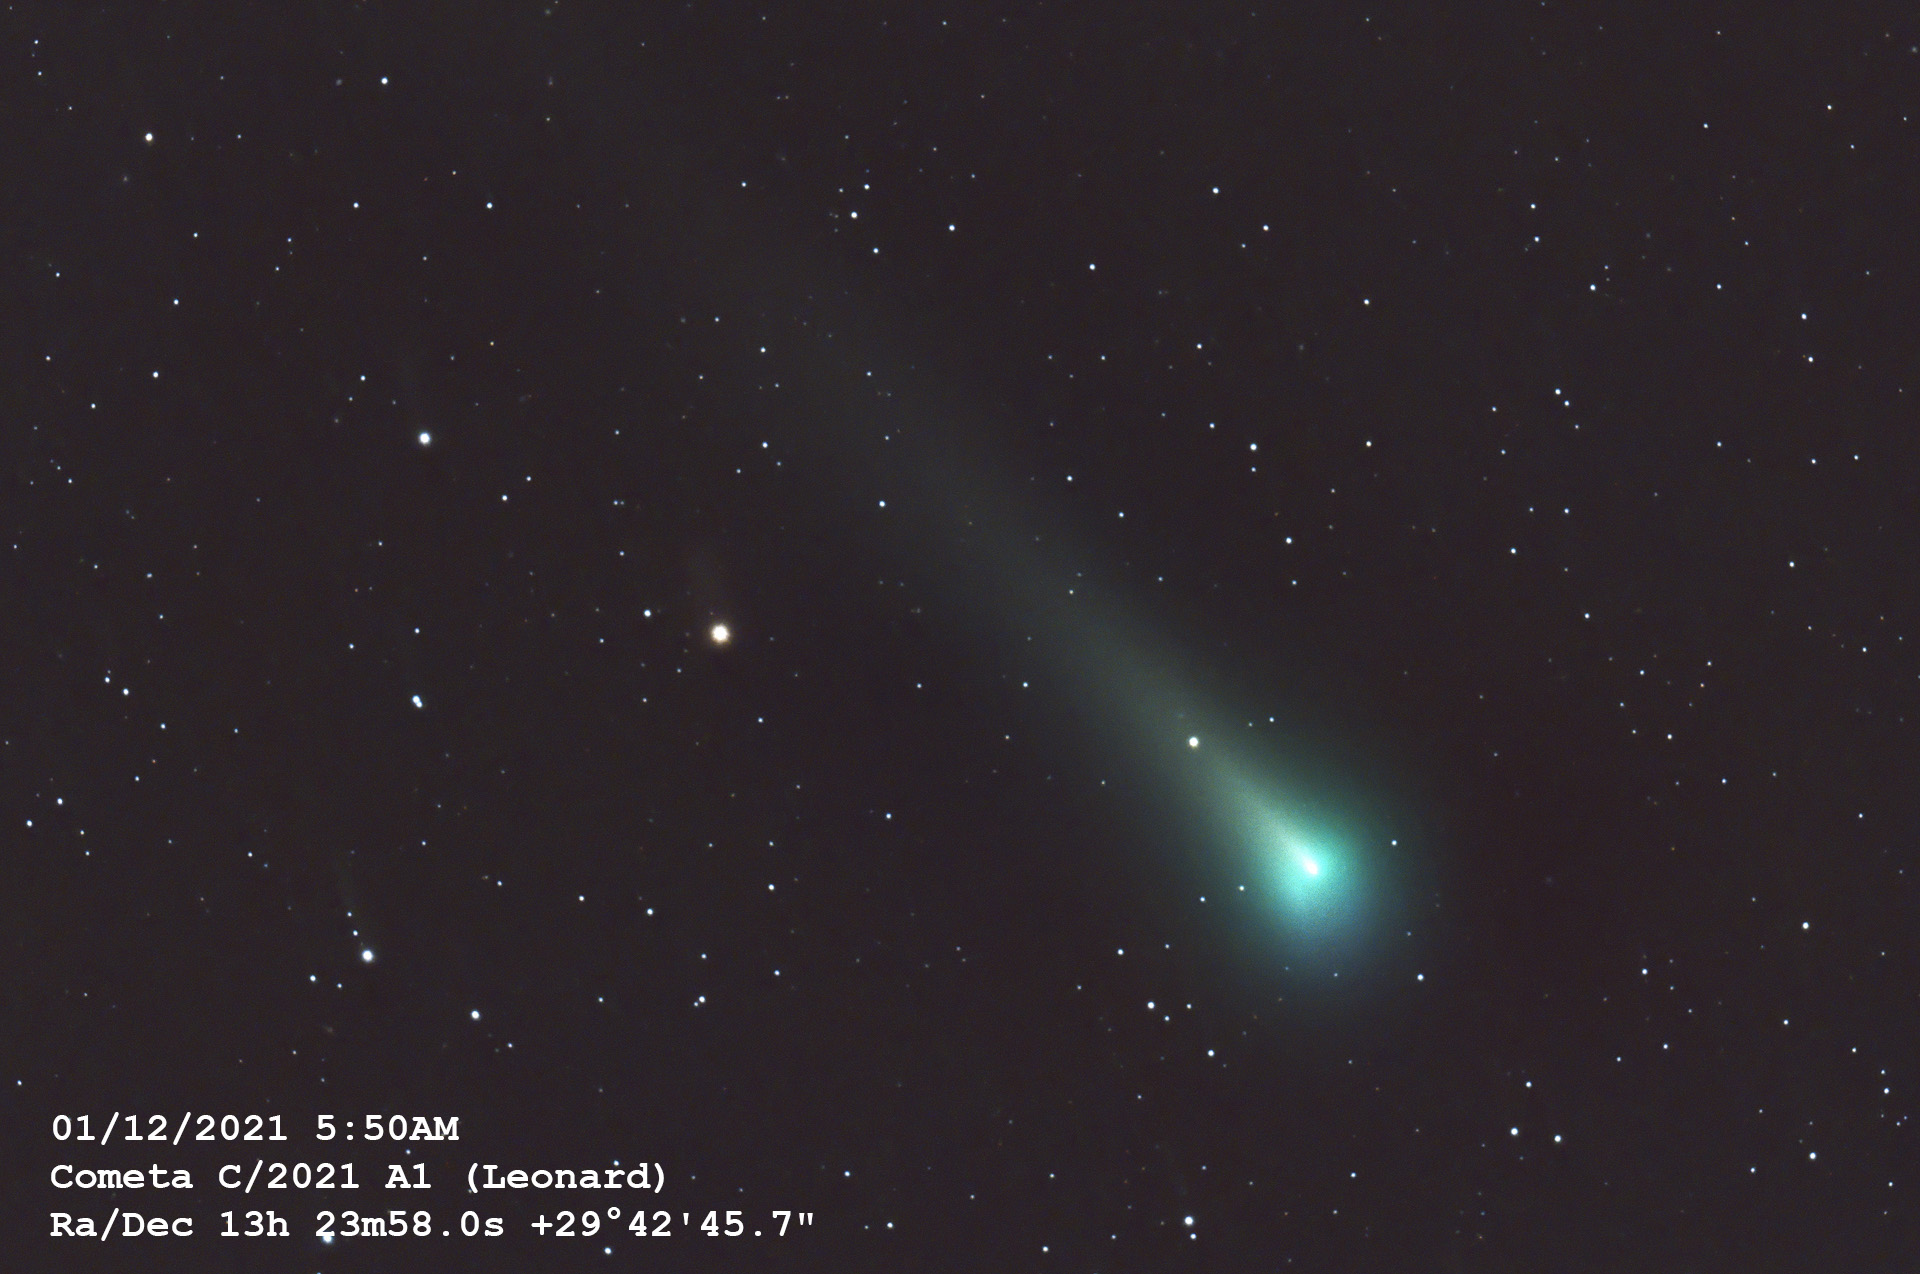 Cometa c/2021 A1 (Leonard)...